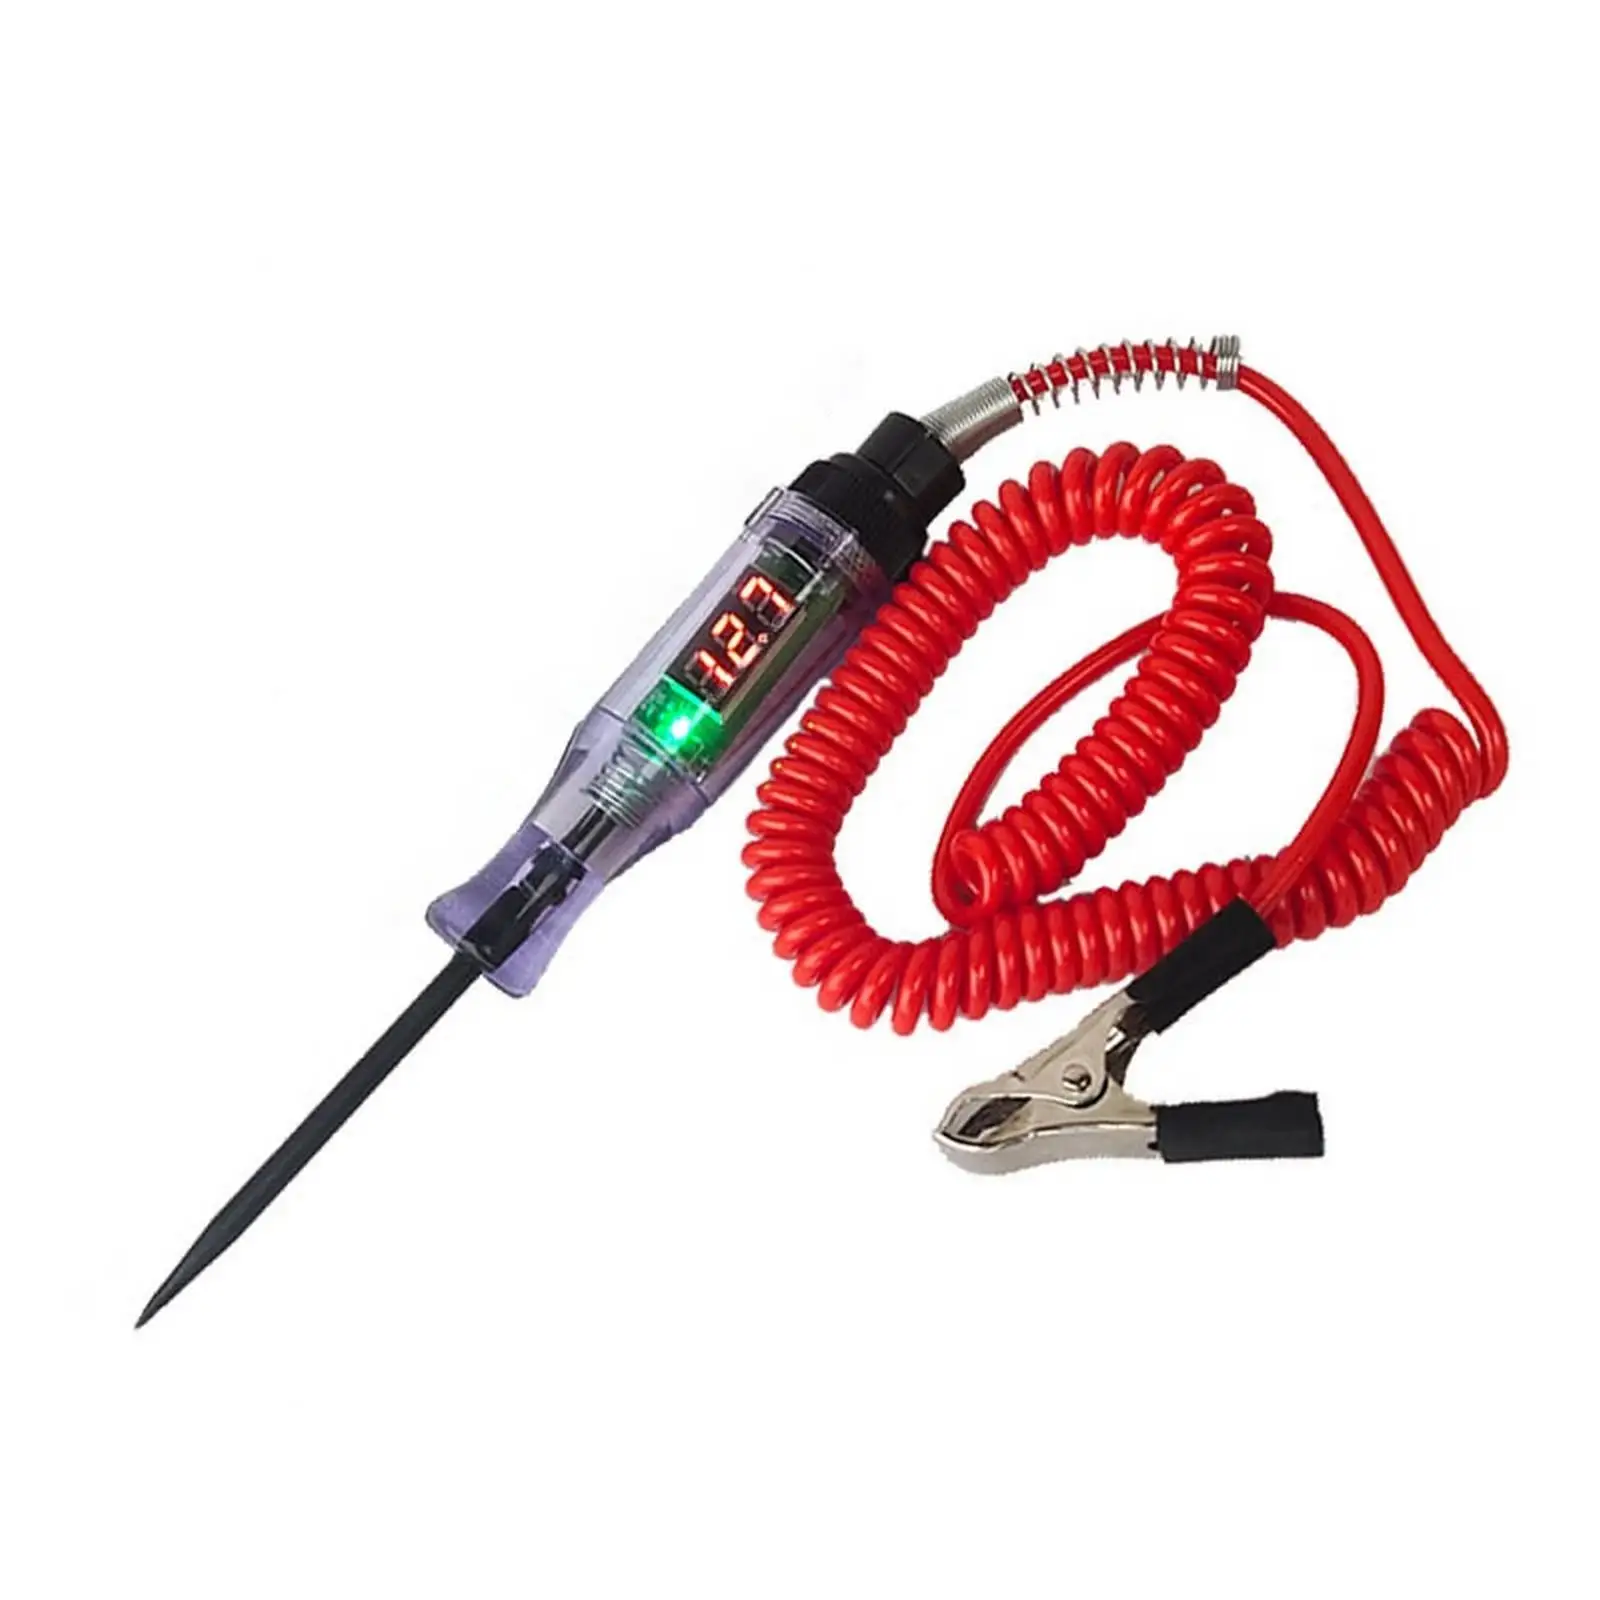 Details about   Car Truck Voltage Circuit Tester 6V 12V 24V DC Hook Probe Test Light Pencil Tool 